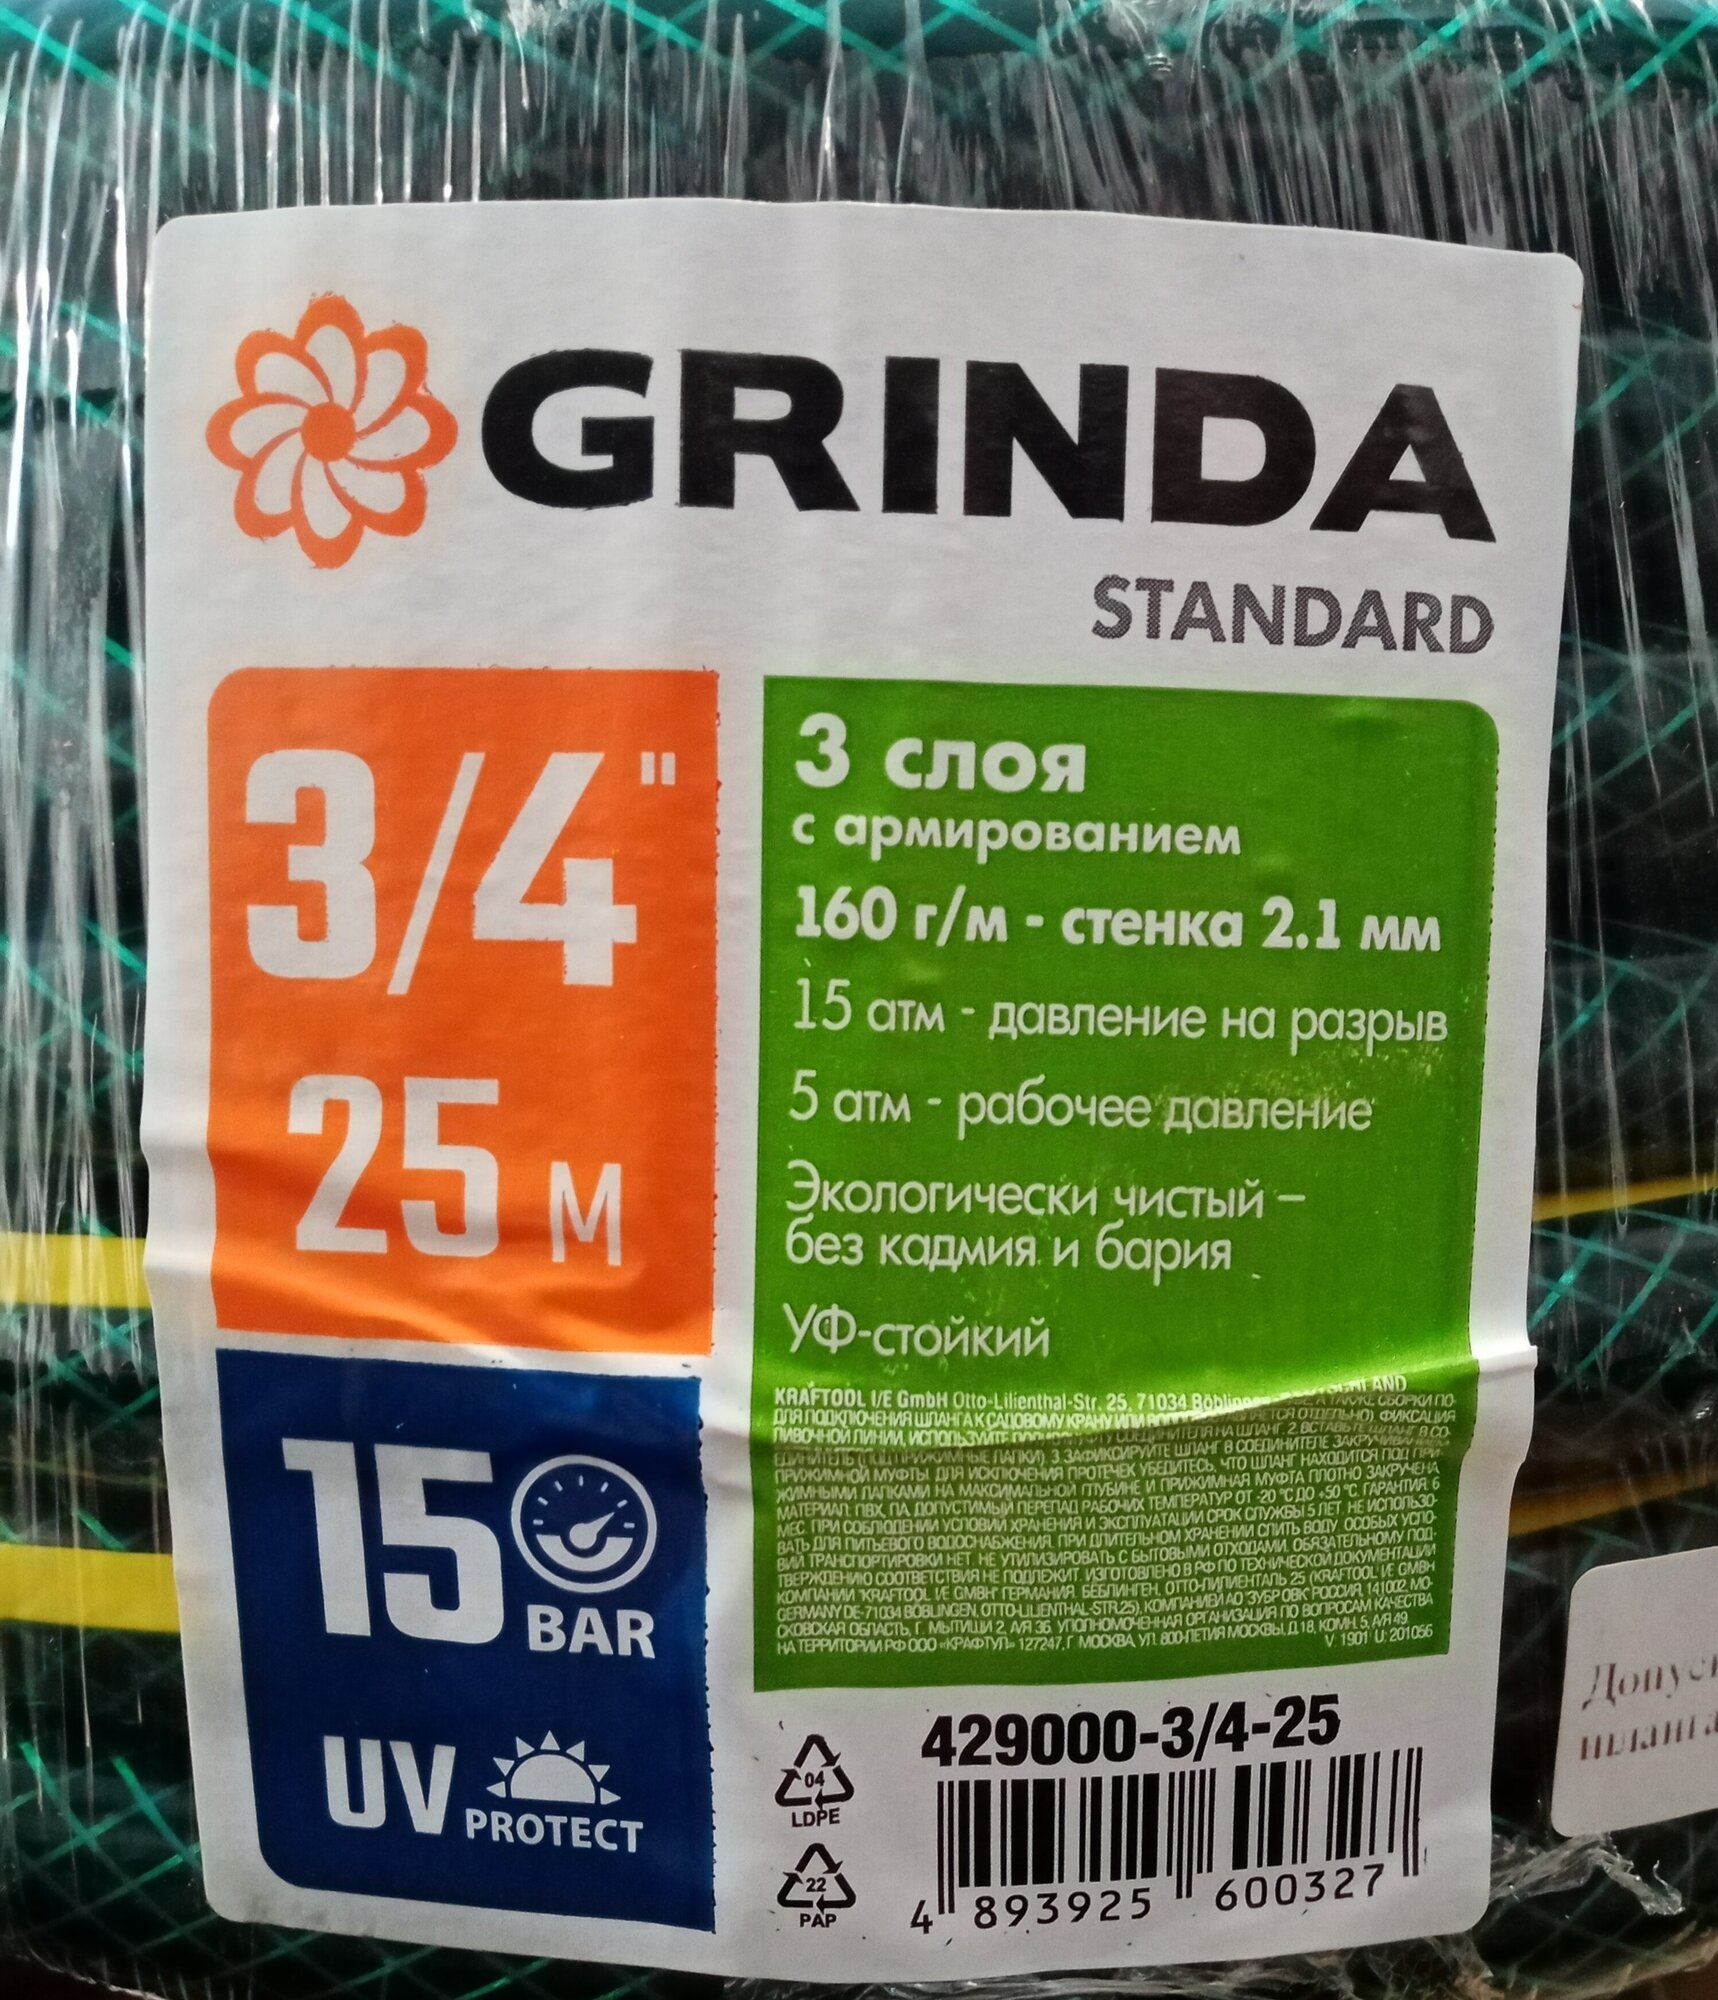 Шланг садовый Grinda STANDARD трёхслойный 3/4", 15 атм, 25 м, 429000-3/4-25